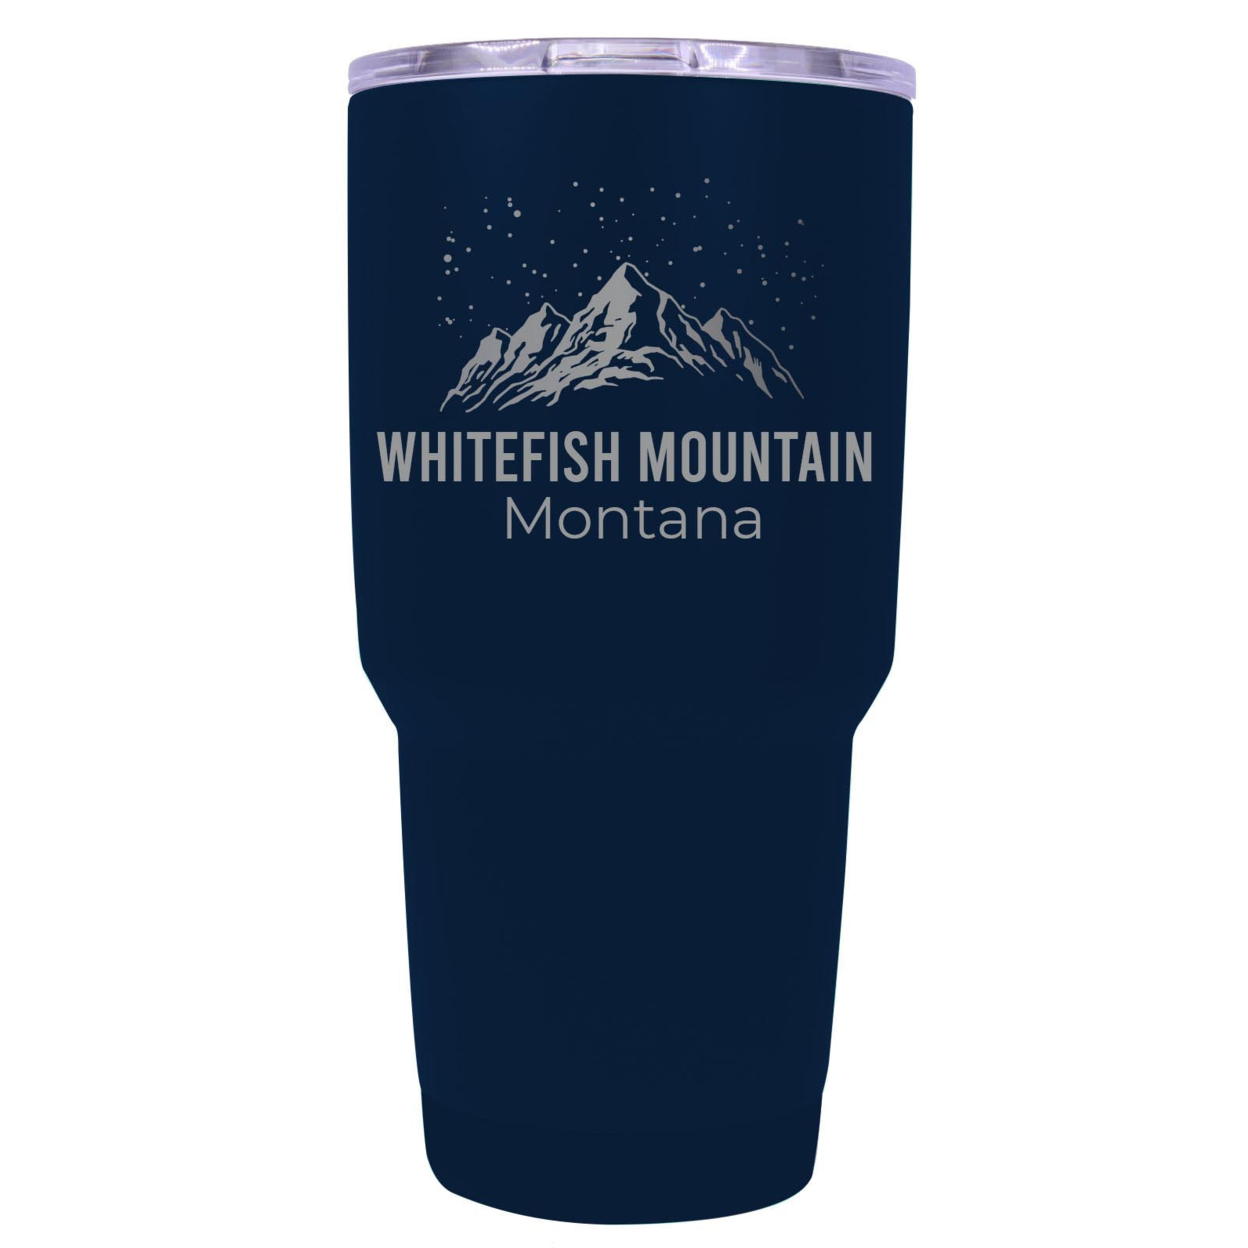 Whitefish Mountain Montana Ski Snowboard Winter Souvenir Laser Engraved 24 Oz Insulated Stainless Steel Tumbler - Navy